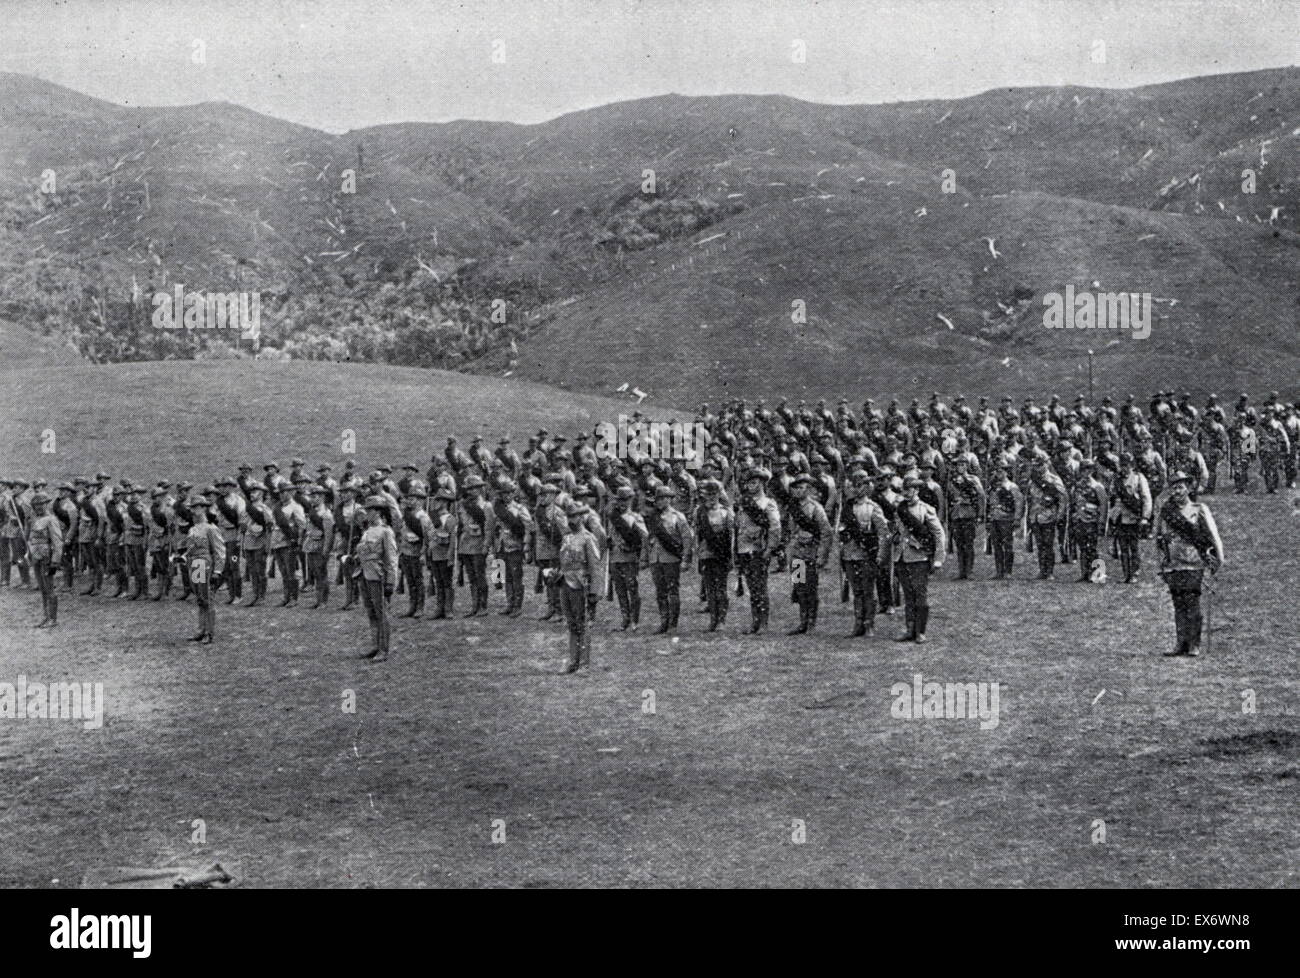 Männer des ersten Kontingents im Karori Trainingslager in Neuseeland vor dem Schlafengehen den Boer-Krieg in Soth Afrika 1899 teilzunehmen. Stockfoto